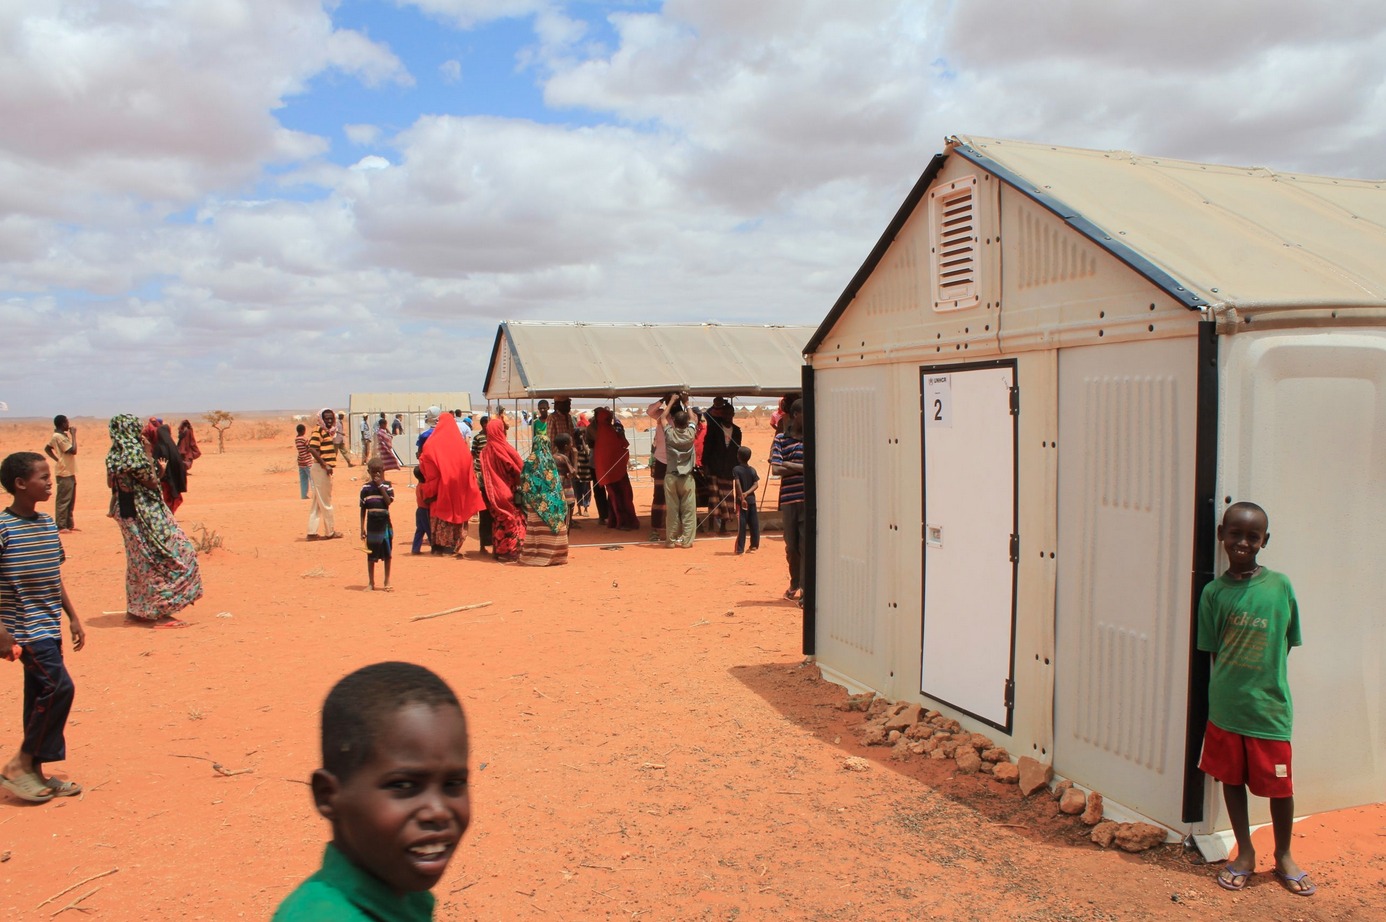 Unidade de Habitação para Refugiados é selecionada como finalista do World Design Impact Prize